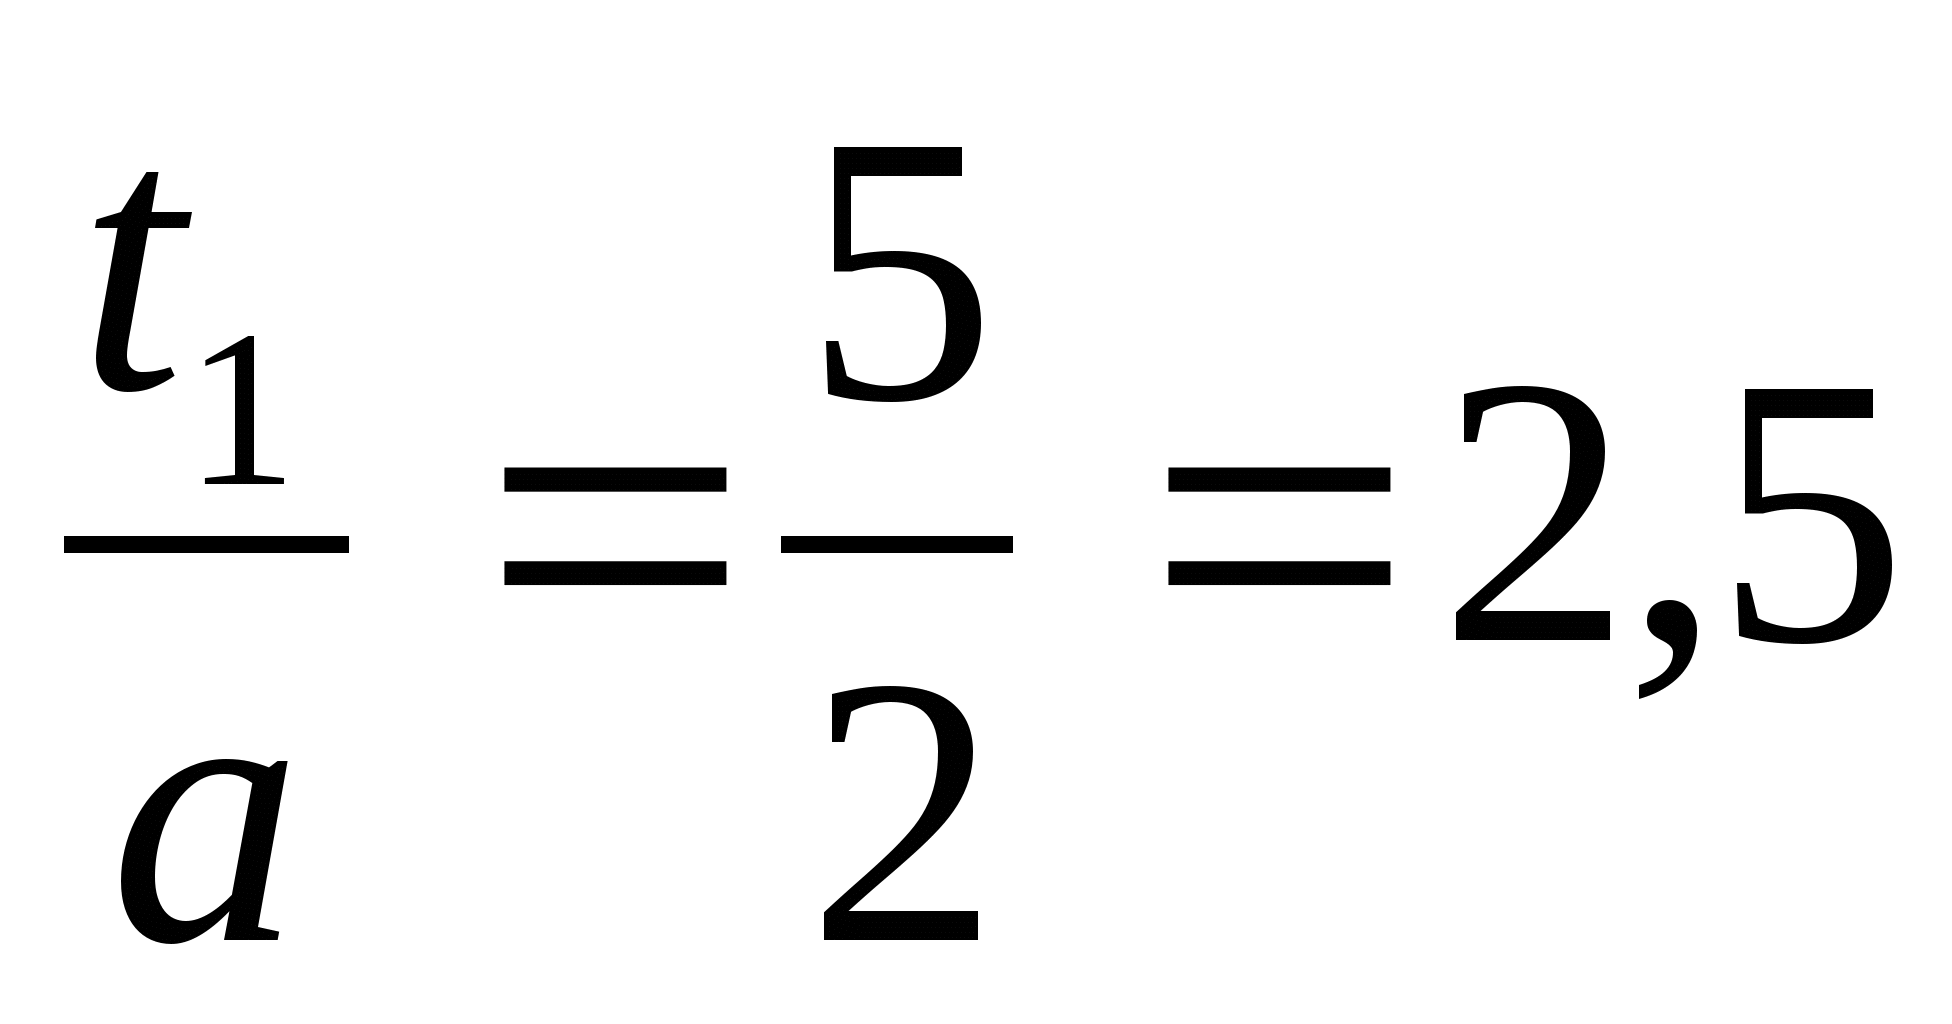 Урок математики в 8 классе «Рациональные способы решения квадратных уравнений»